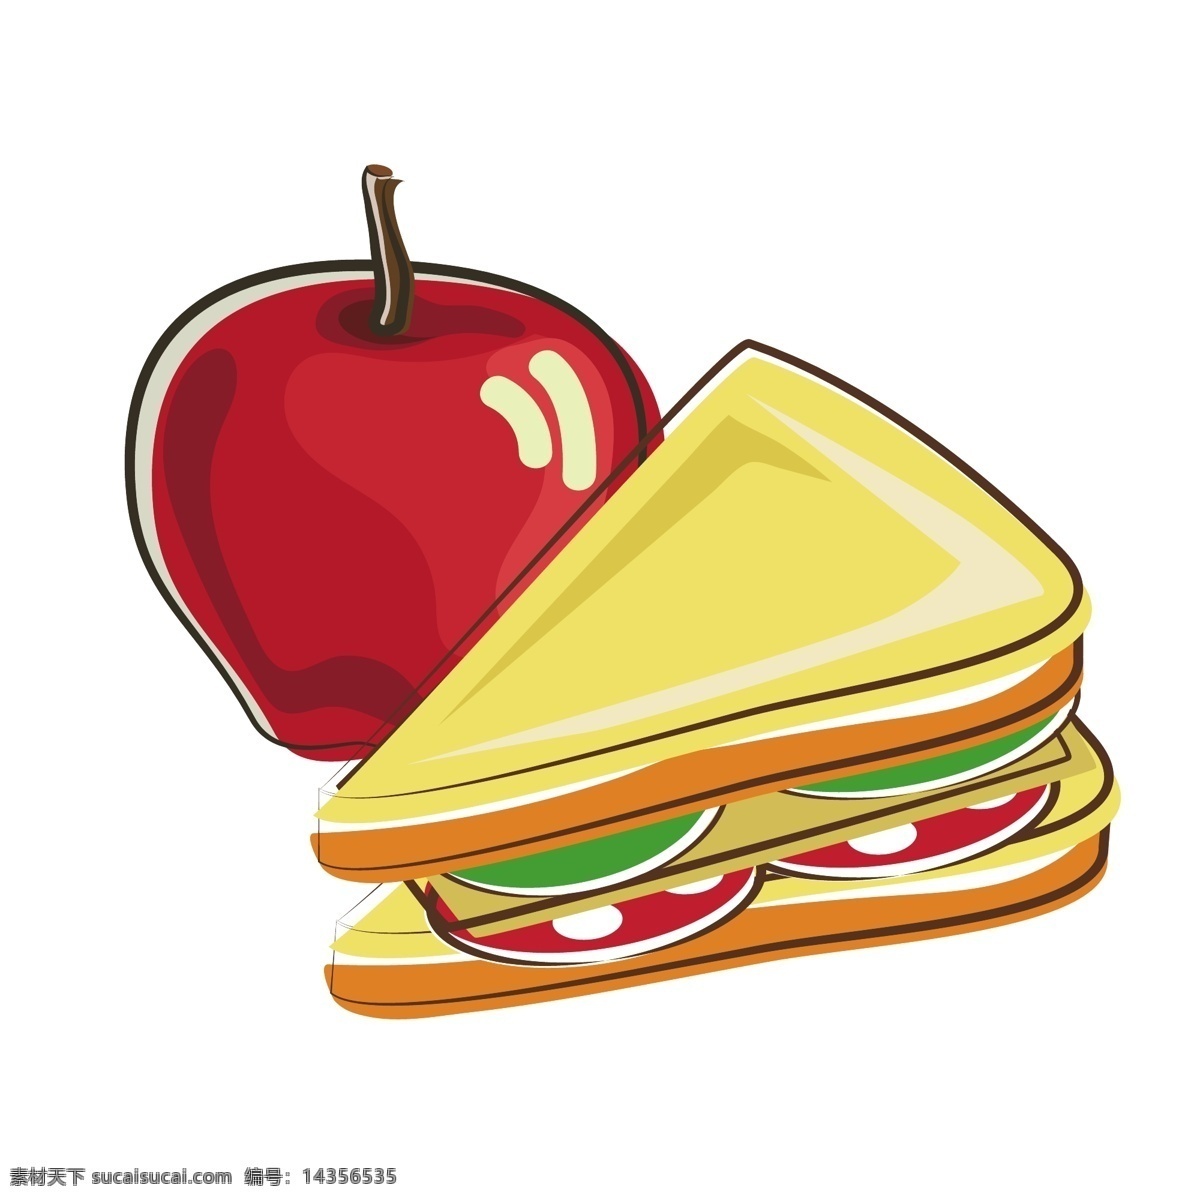 美味 三明治 苹果 矢量 美味的 美味的三明治 美味三明治 卡通 卡通三明治 卡通苹果 红色 红色苹果